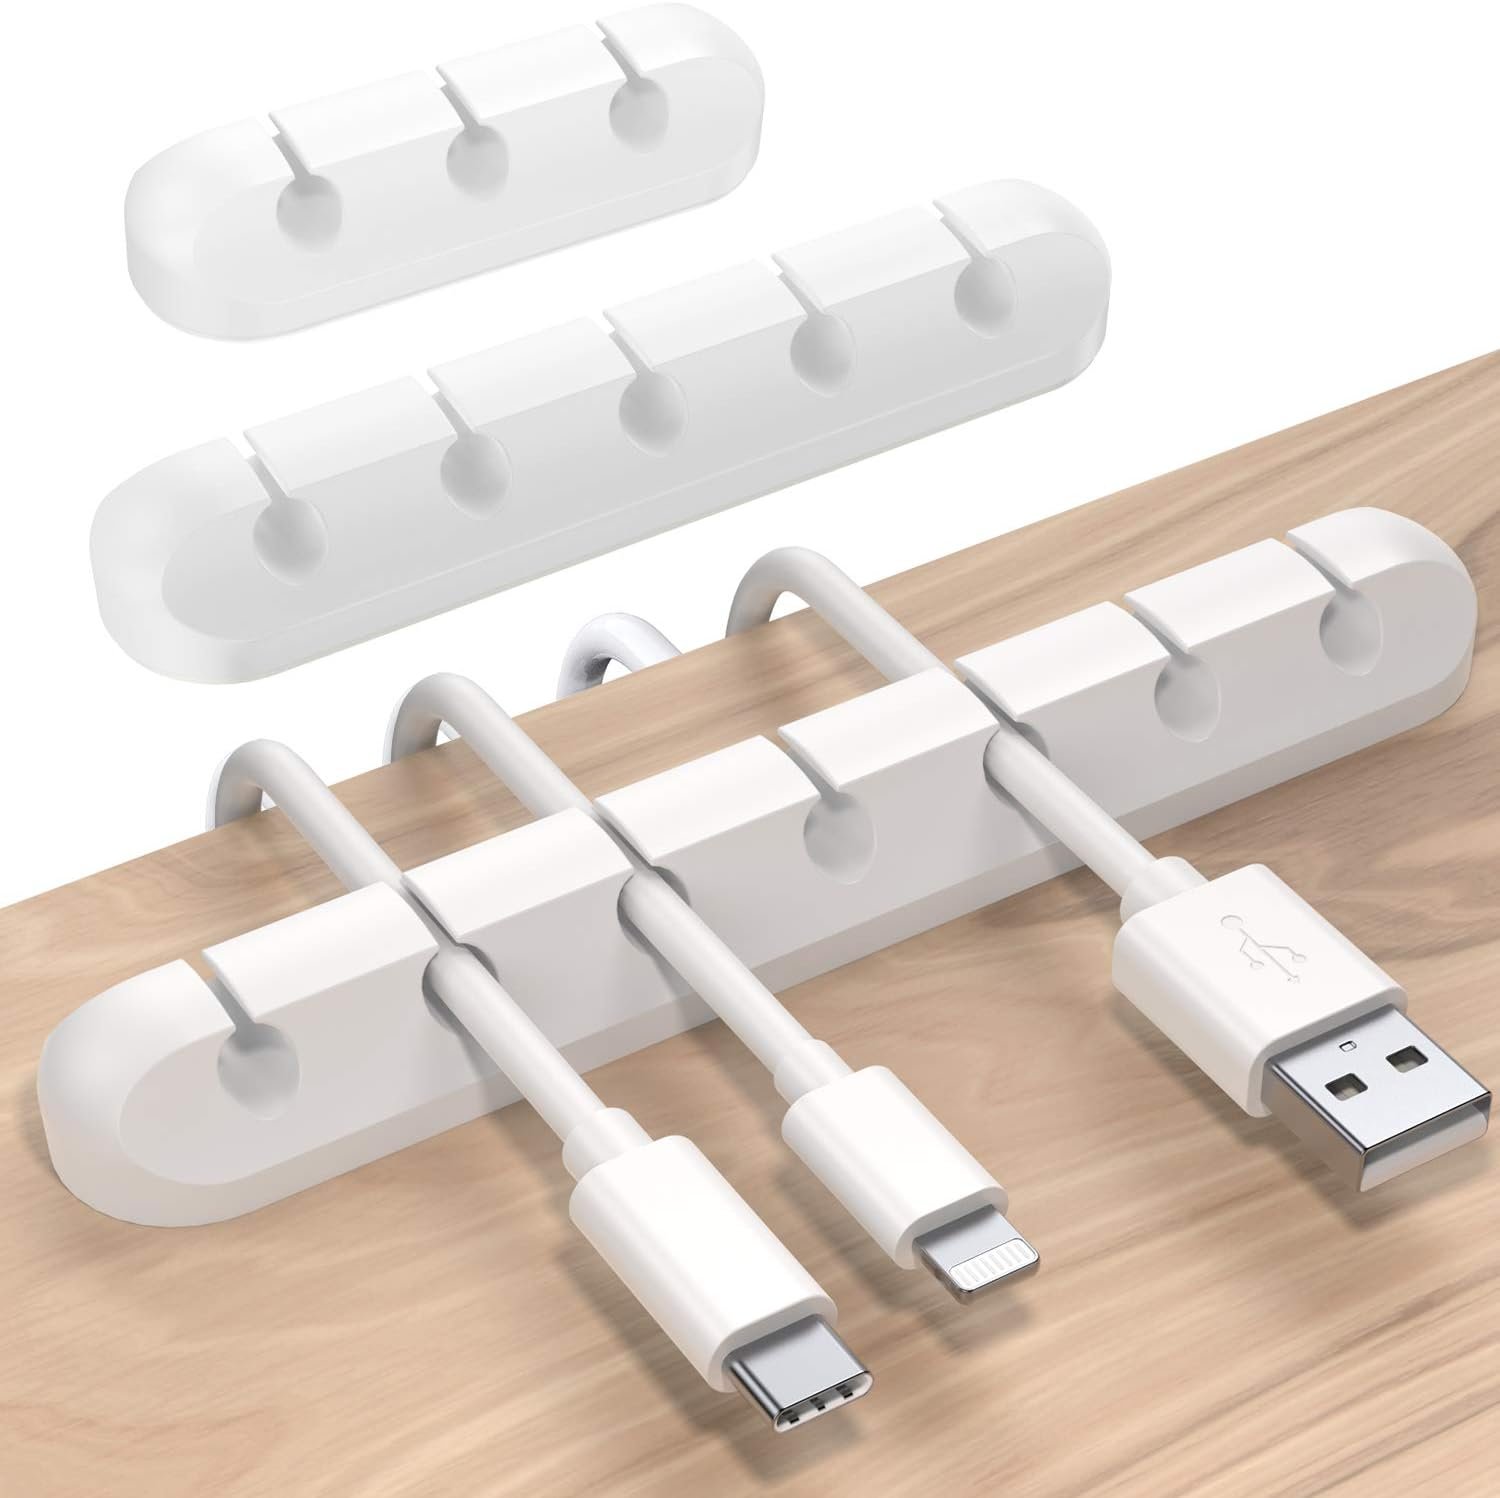 Herramientas simples para tener tus cables bien organizados